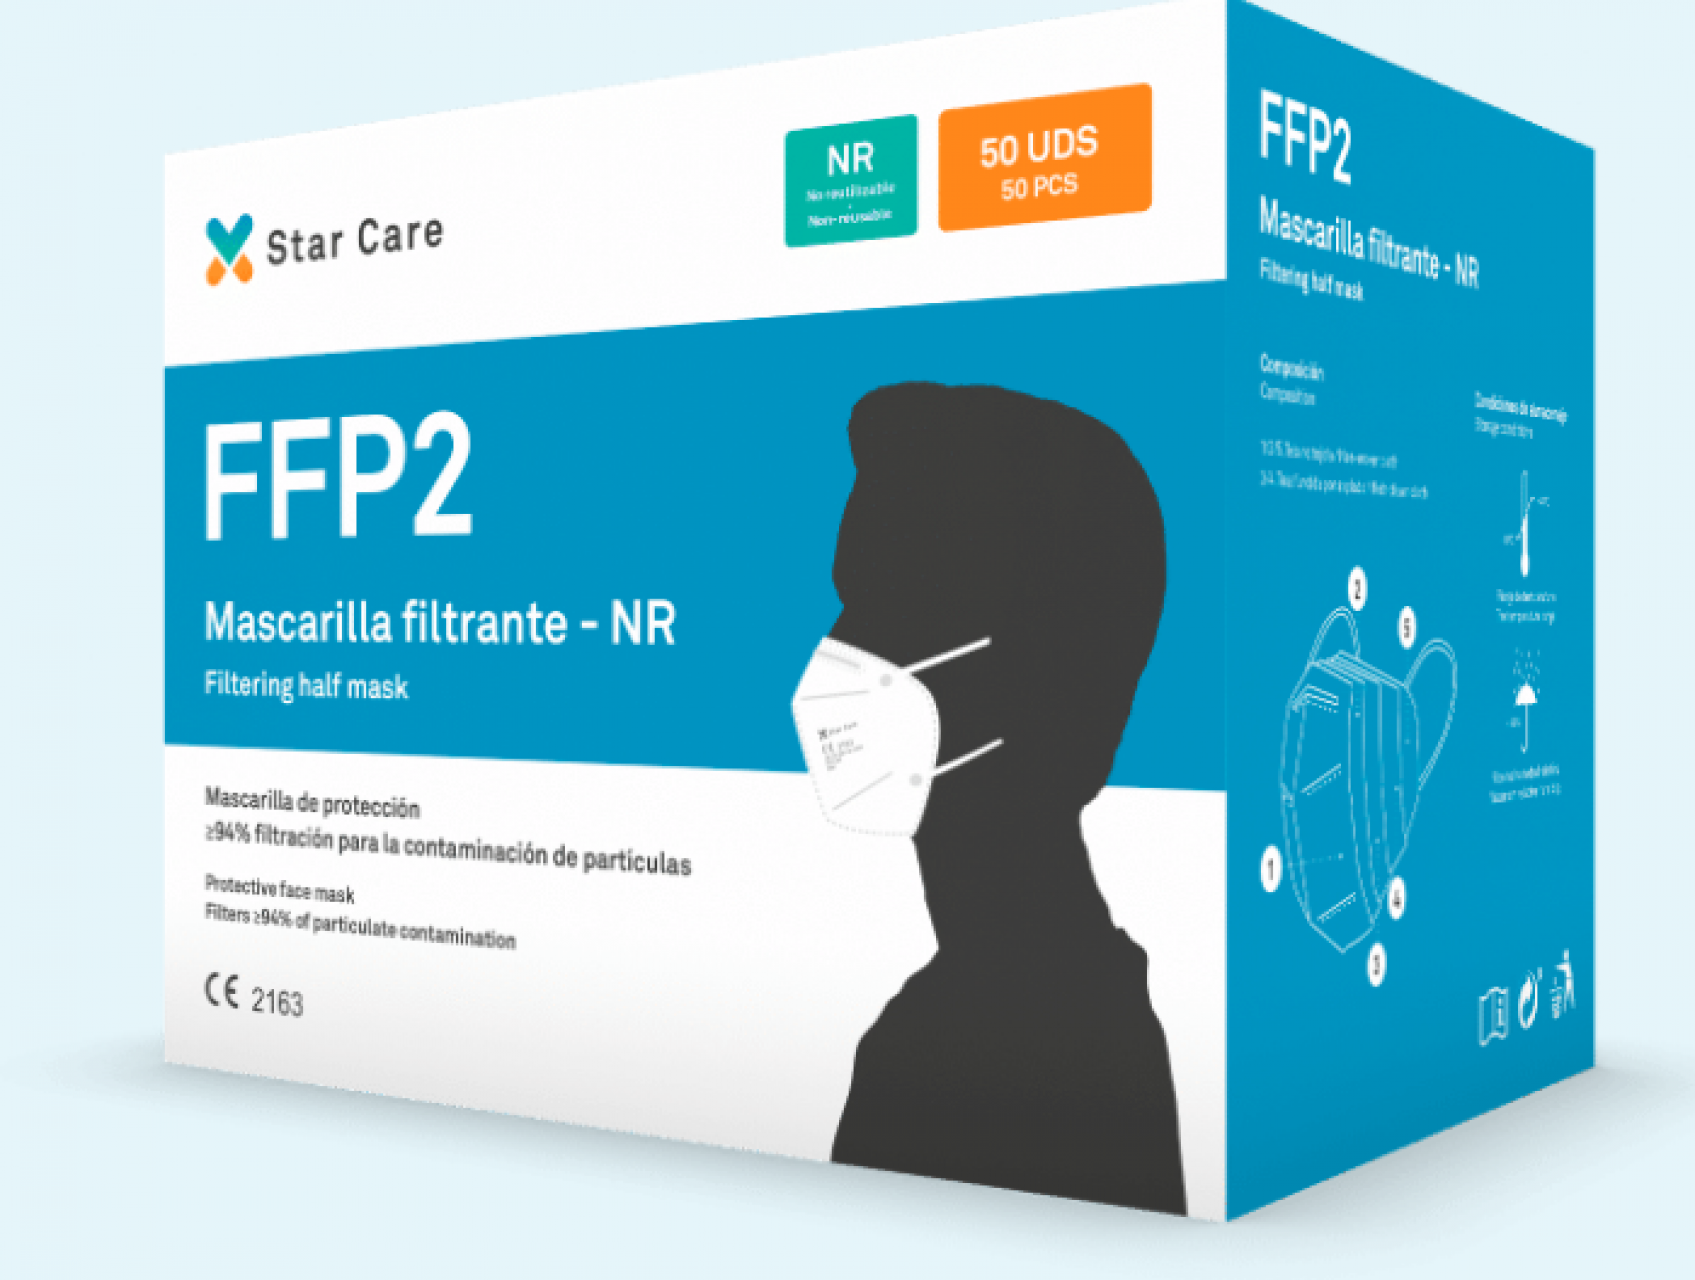 Mascarilla FFP2 de protección > 98% filtración para la contaminación de partículas Covid-19